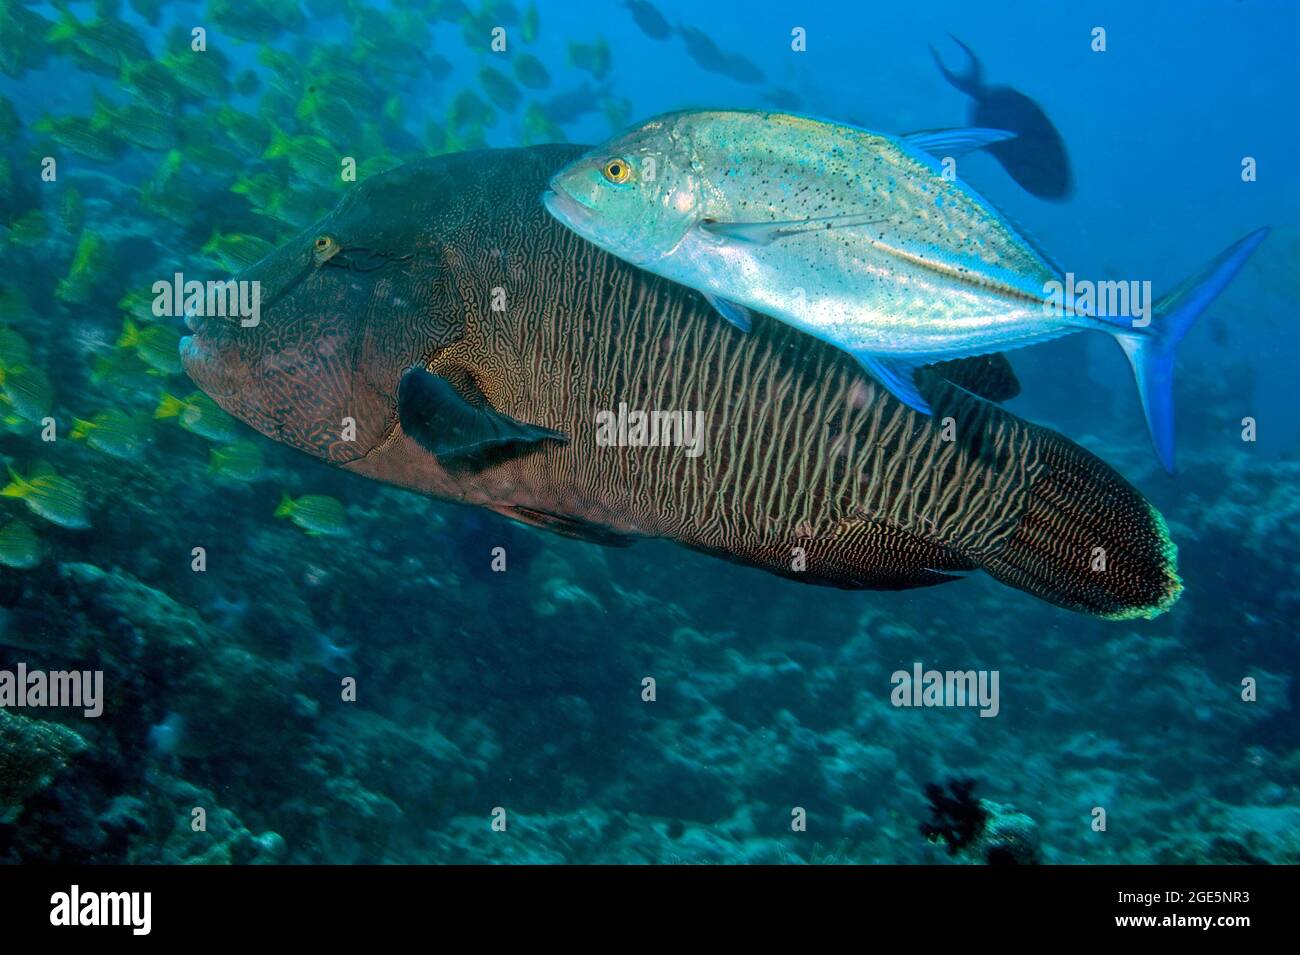 Chasse au thon rouge (Caranx melampygus) à l'ombre de jeunes poissons napoléon (Cheilinus undulatus), Océan Indien, Maldives Banque D'Images